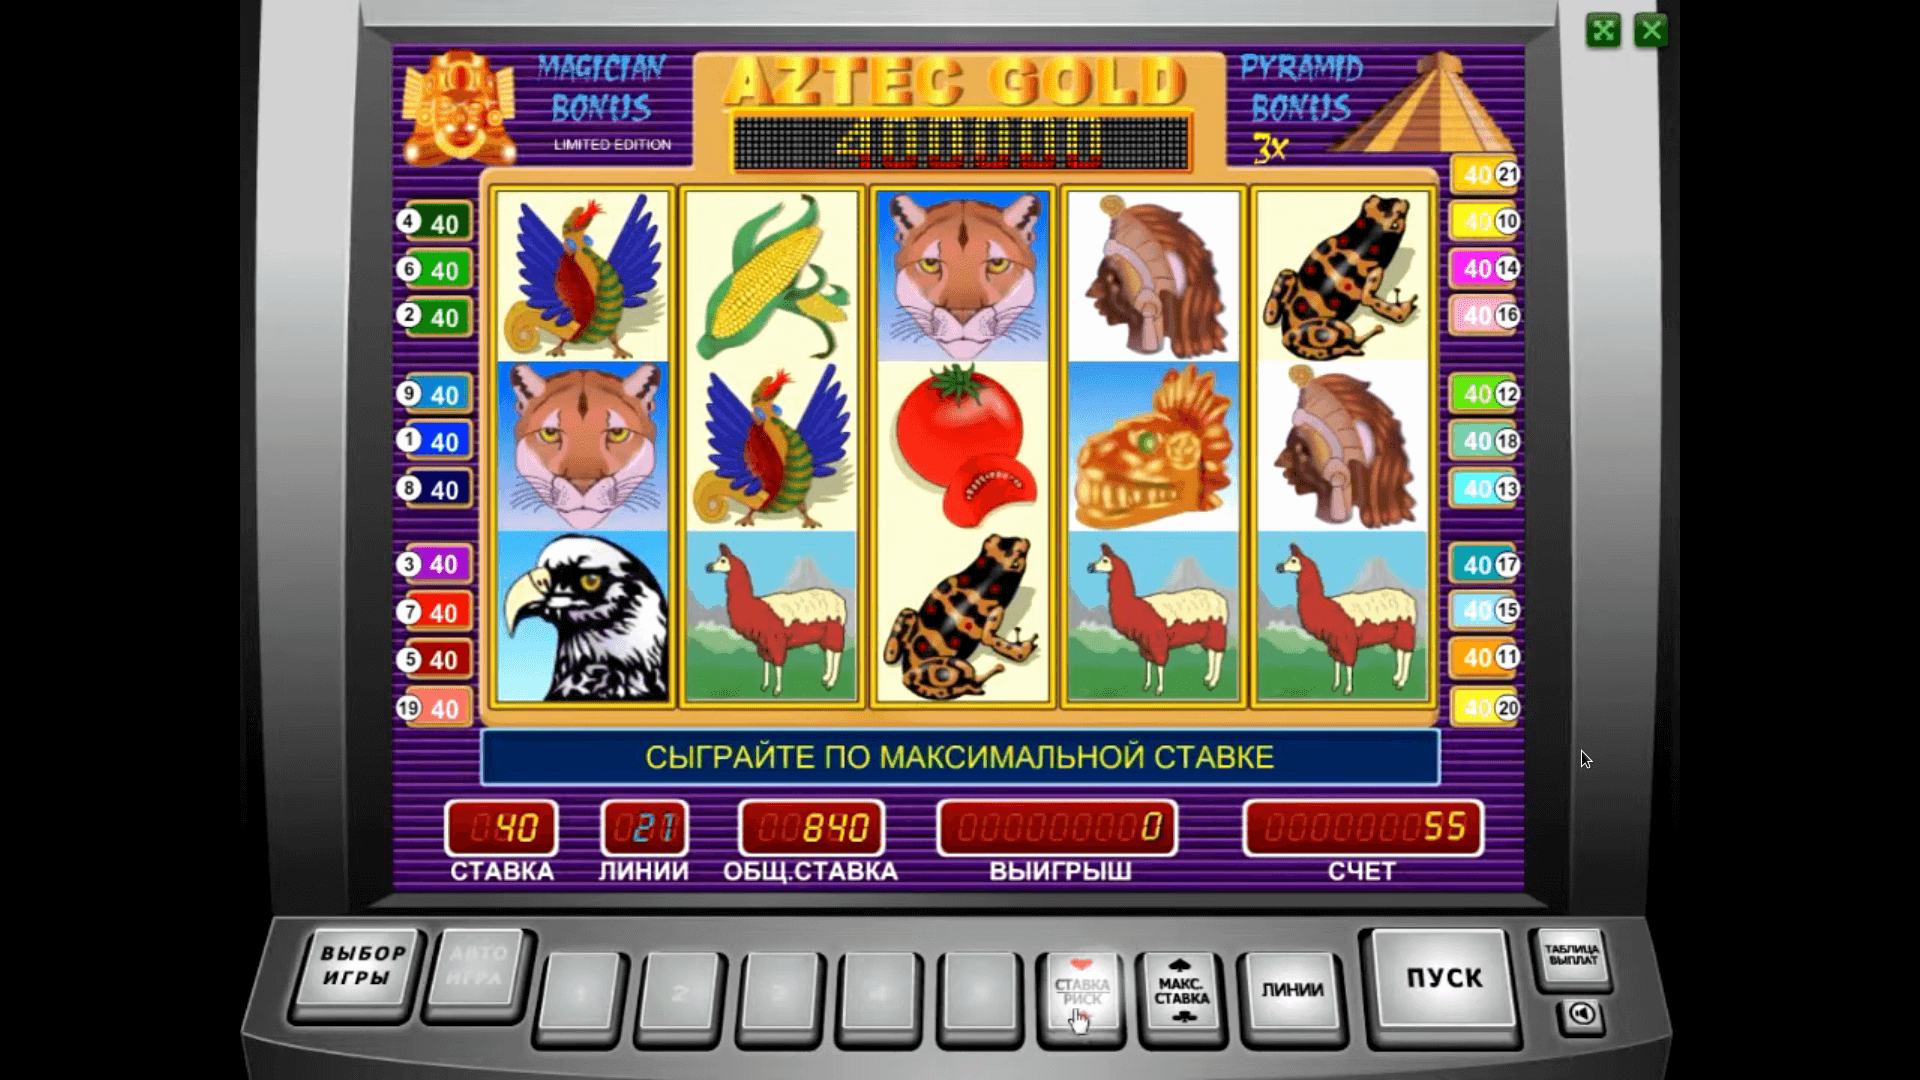 Эмулятор игровых автоматов пирамида играть бесплатно покер игровых автоматов